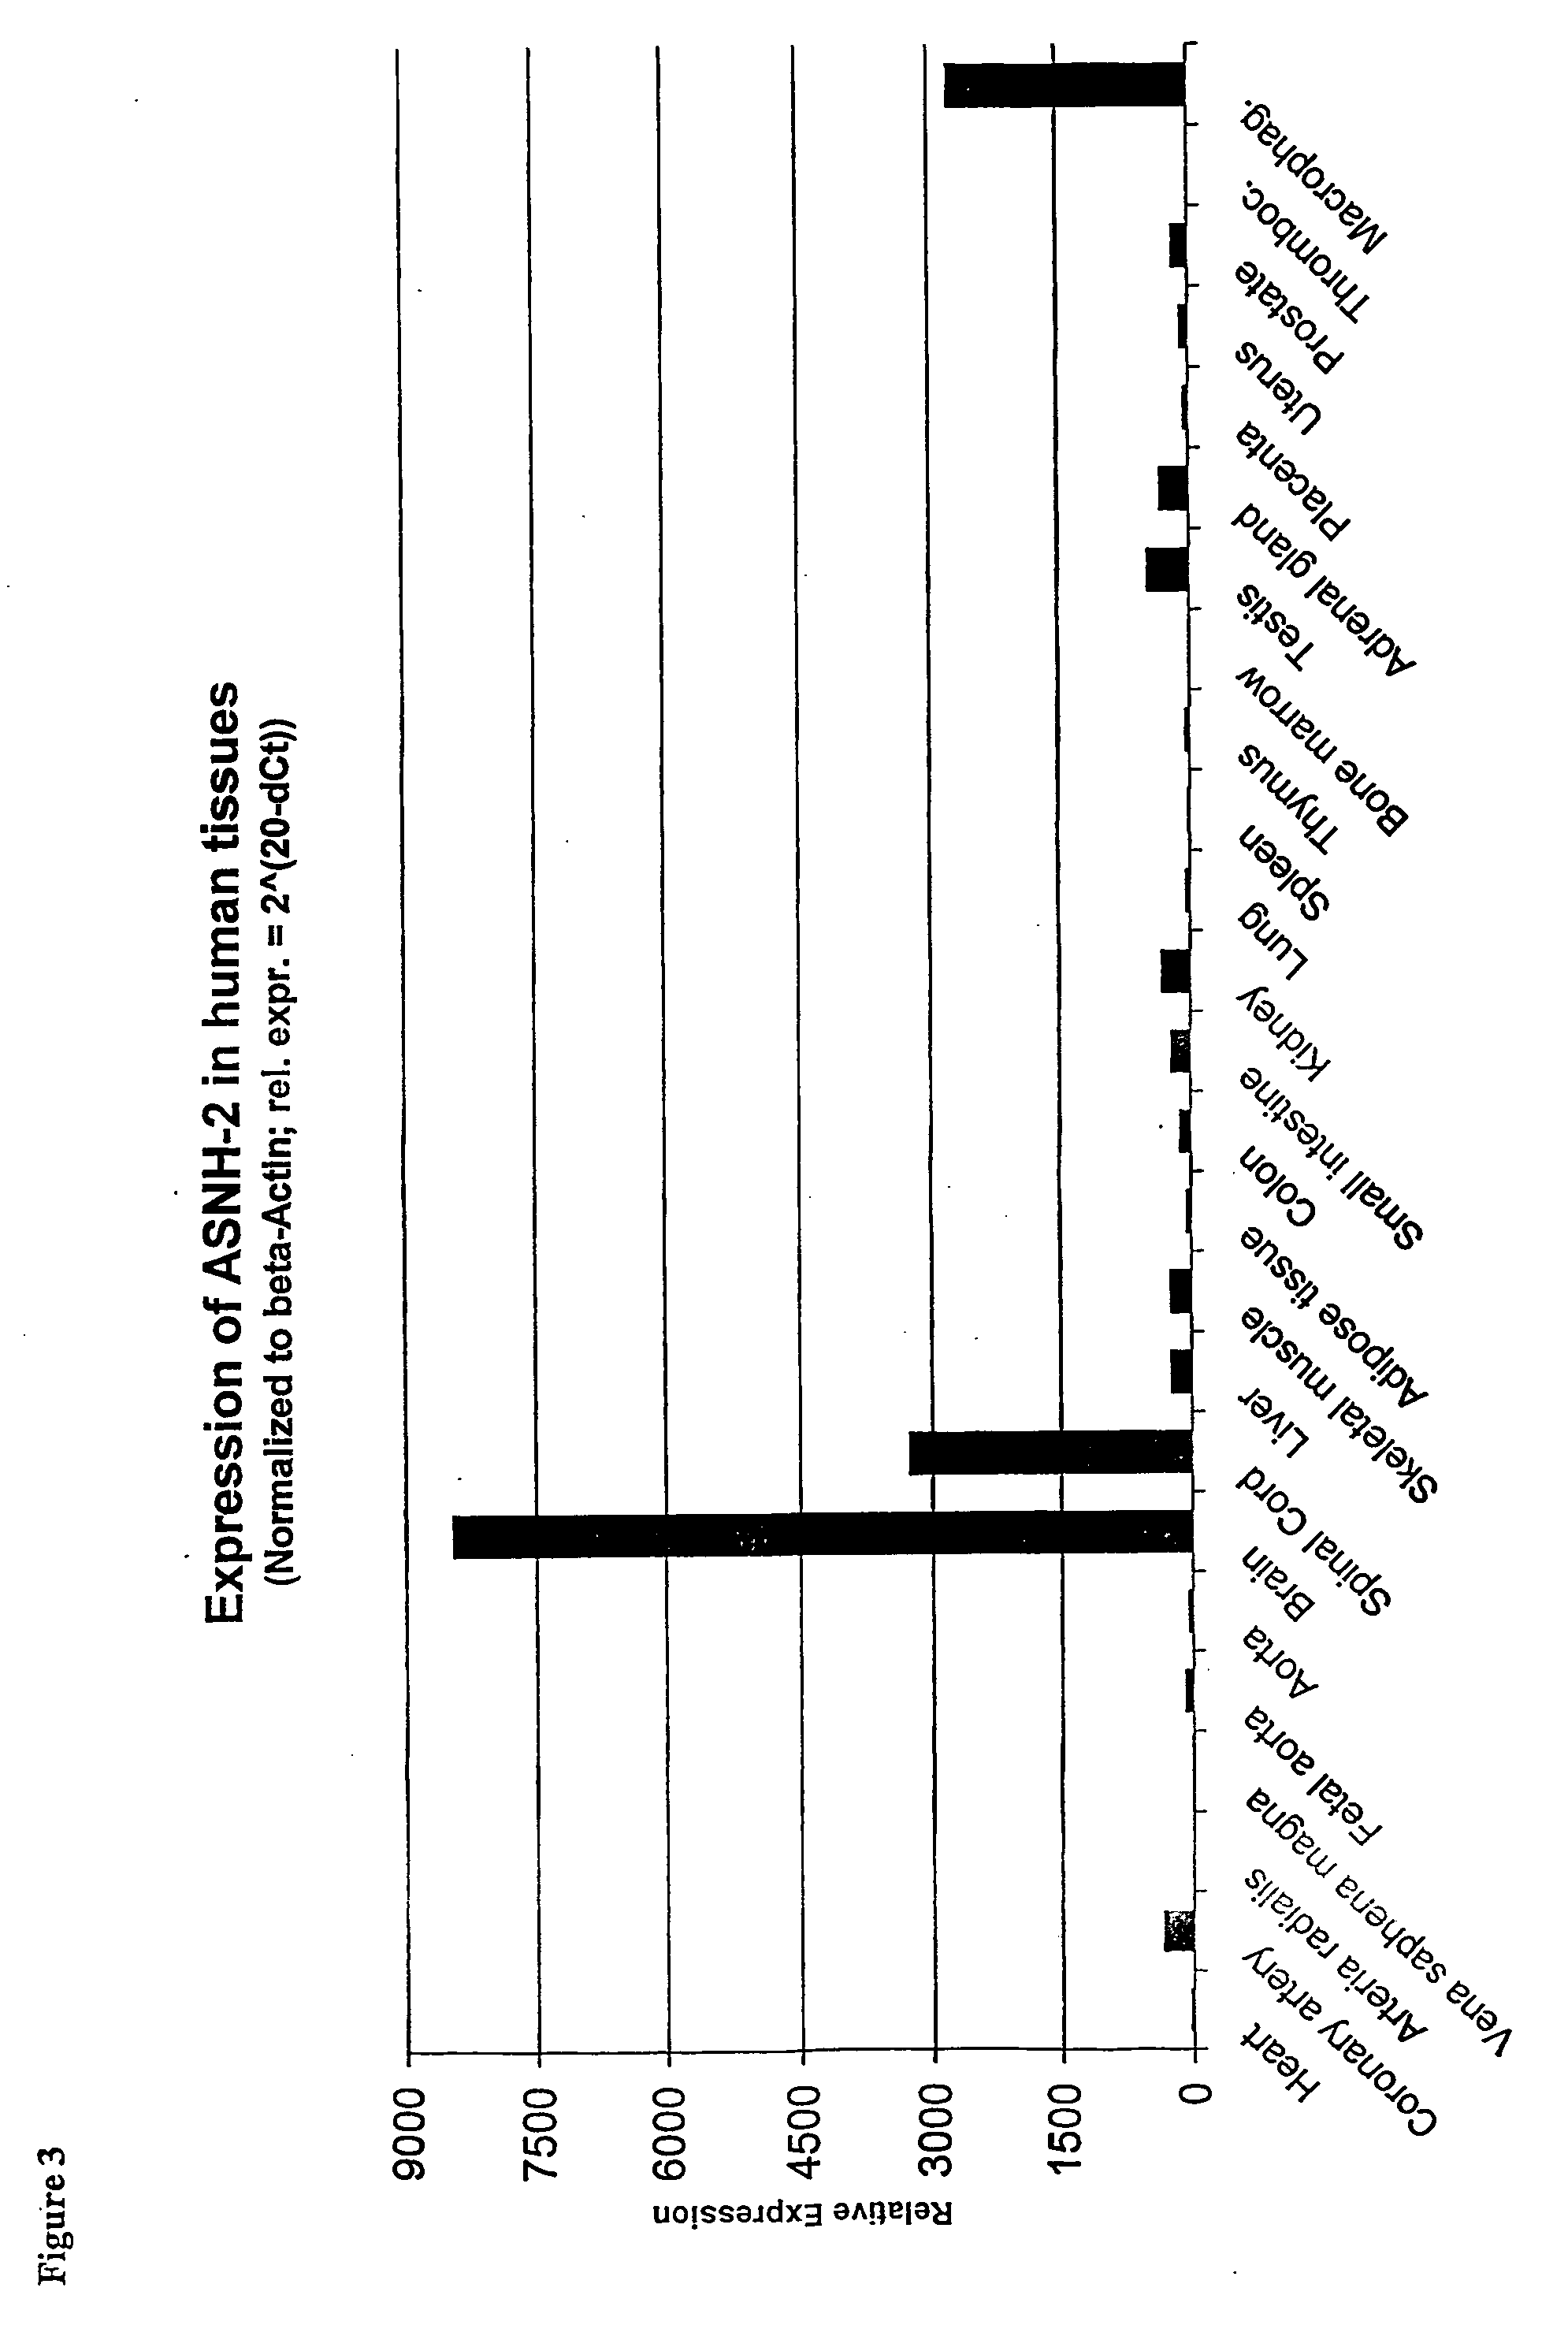 Regulation of novel human asparagine-hydroxylases